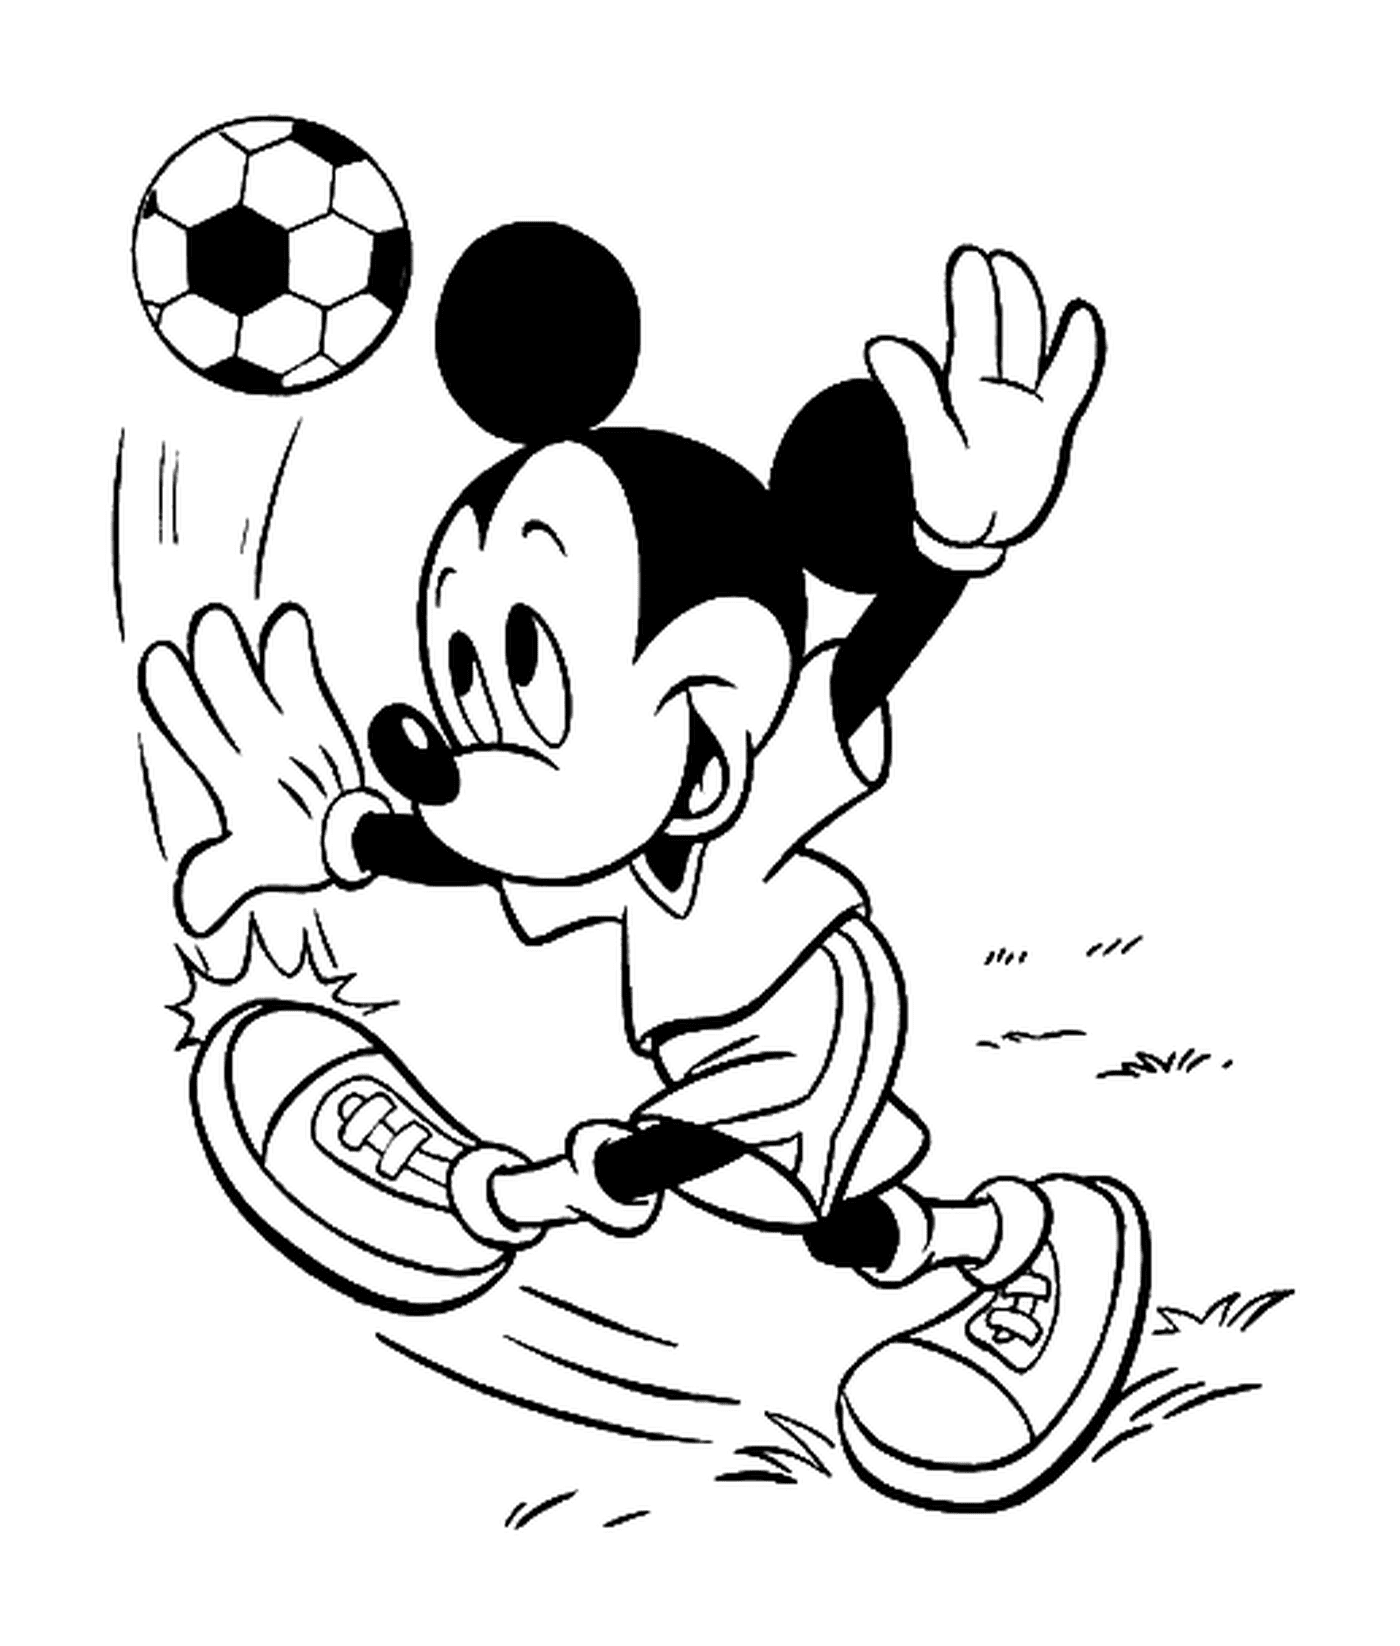  Mickey spielt Fußball mit einem Fußball 